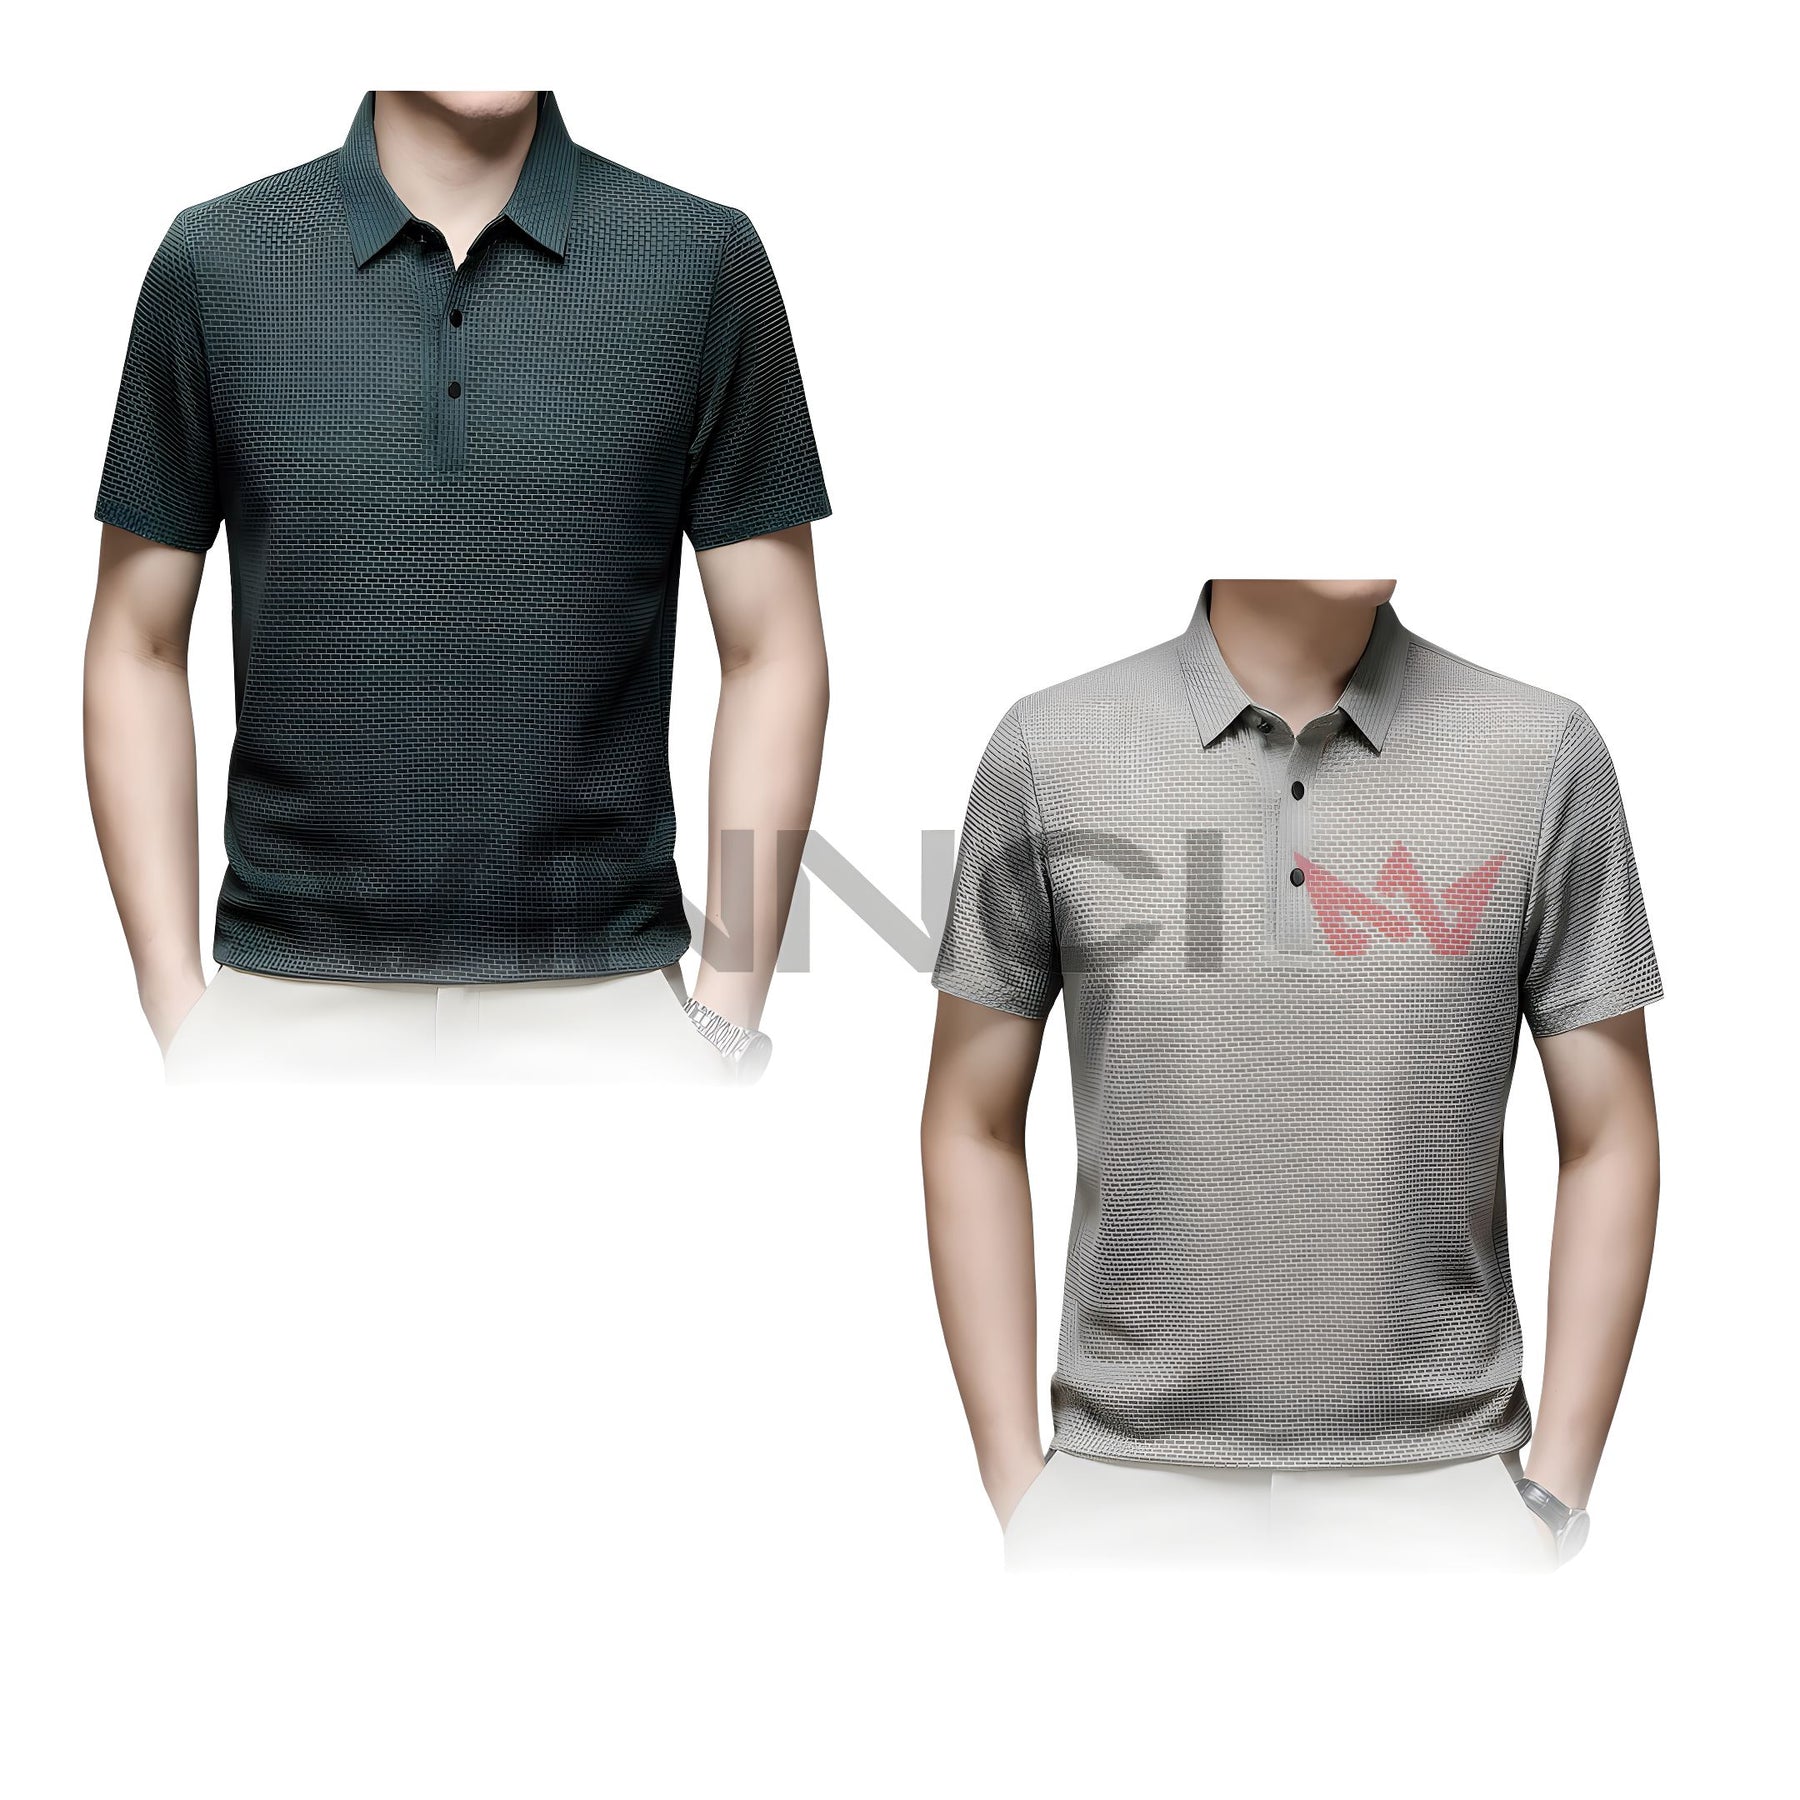 Camisa Polo Premium Texturizada - Conforto e Elegância [Compre 1, Leve 2] Camisa Polo Premium Texturizada - Conforto e Elegância [Compre 1, Leve 2] VINNCI Store Bege Verde P